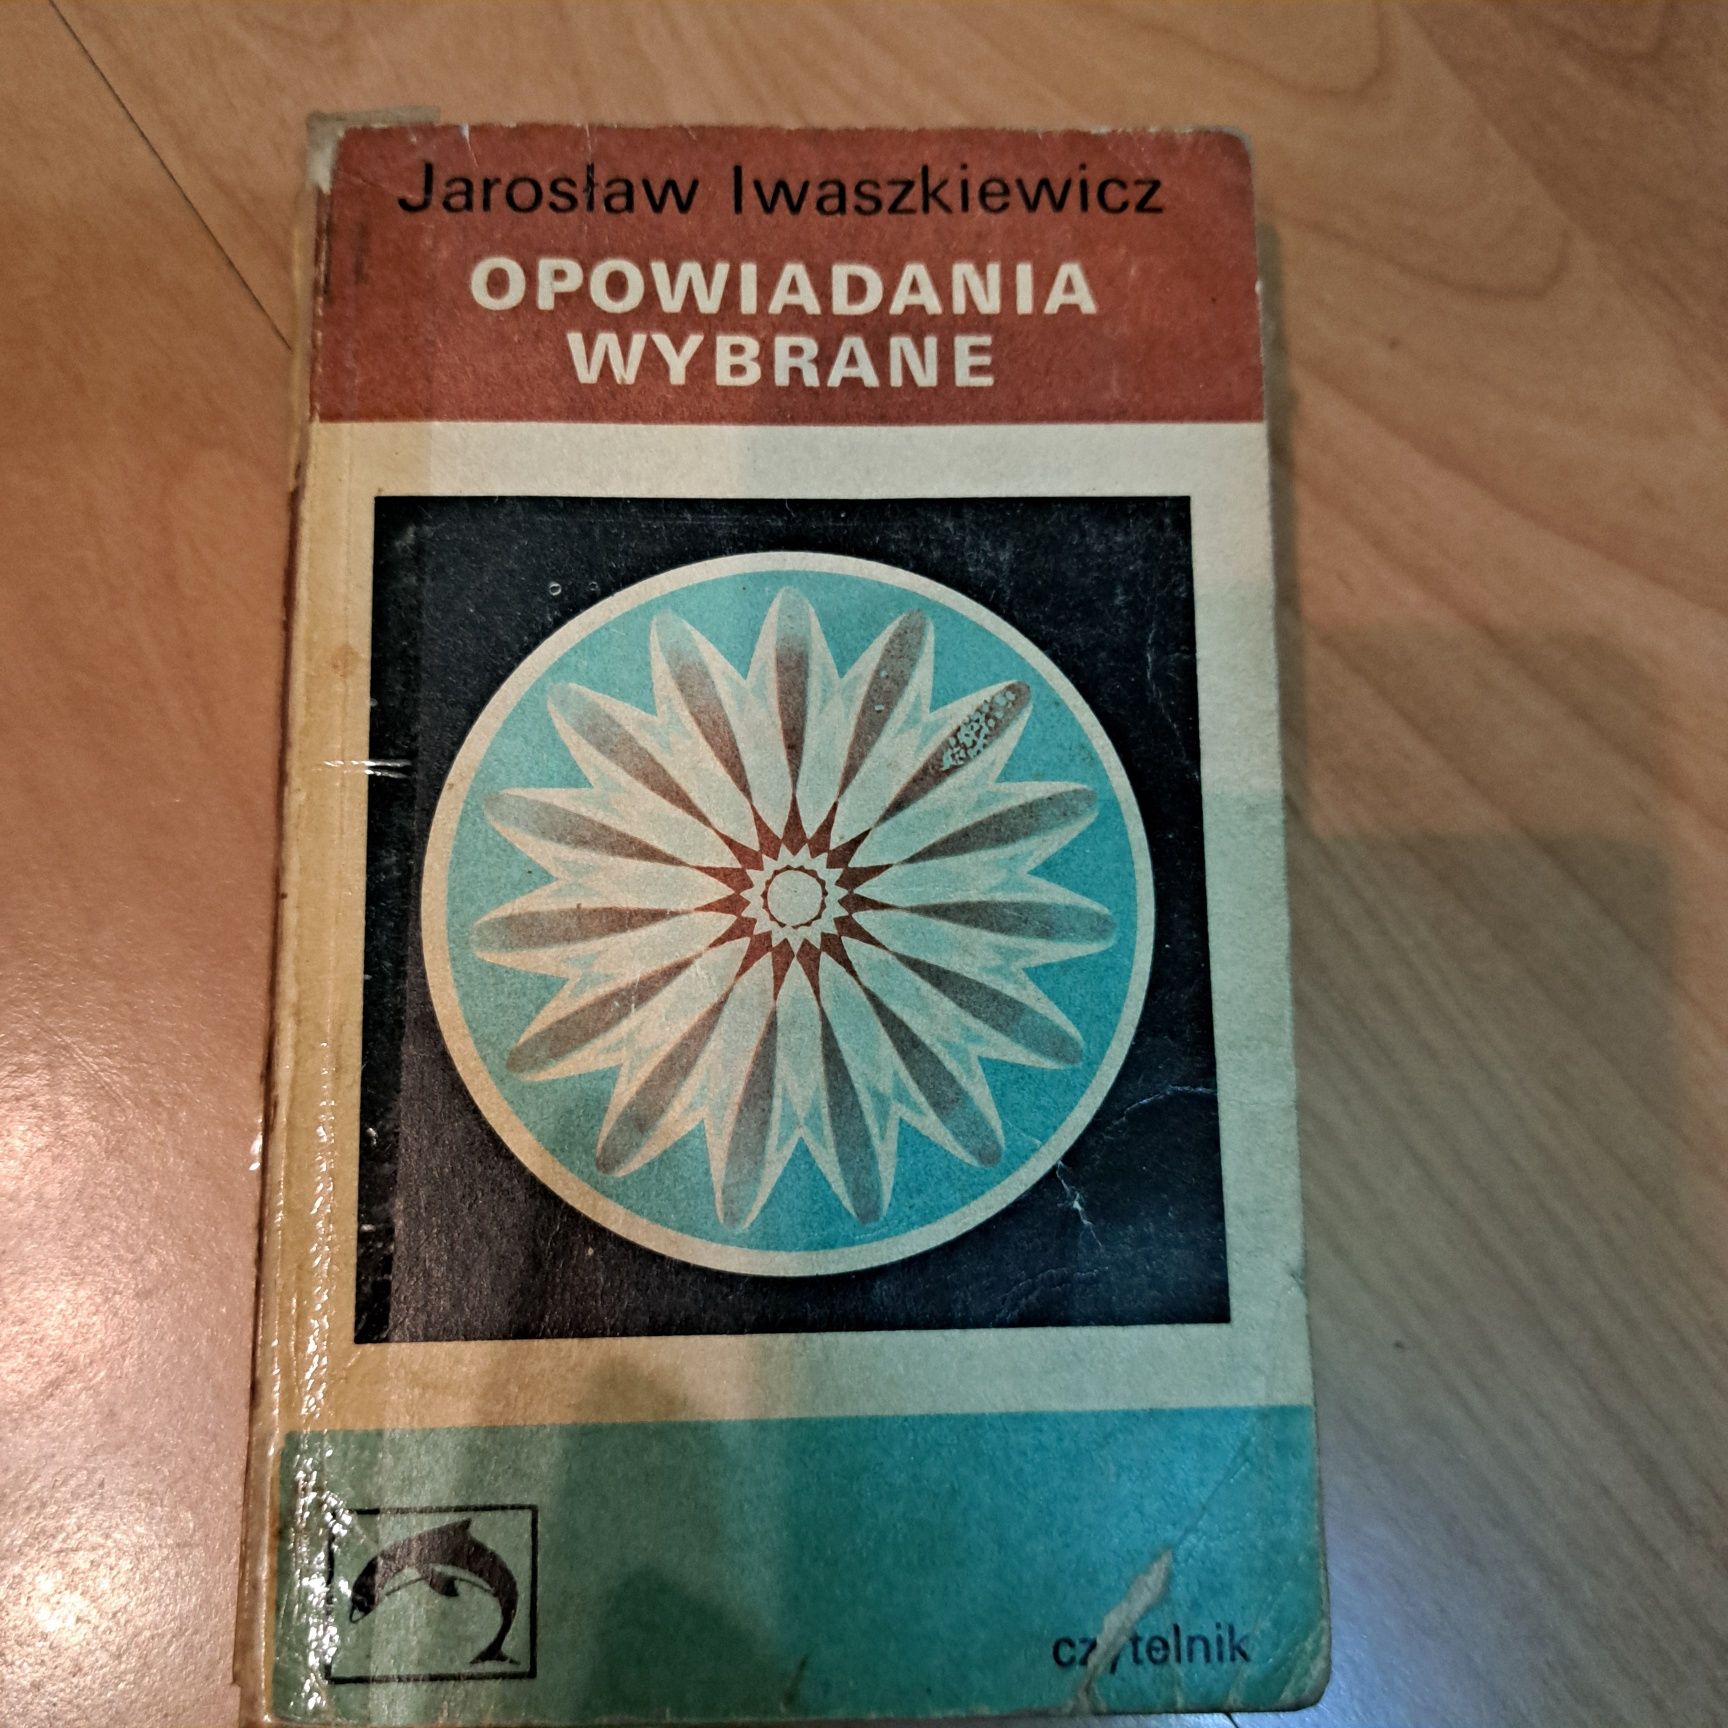 Opowiadania wybrane

Jarosław Iwaszkiewicz